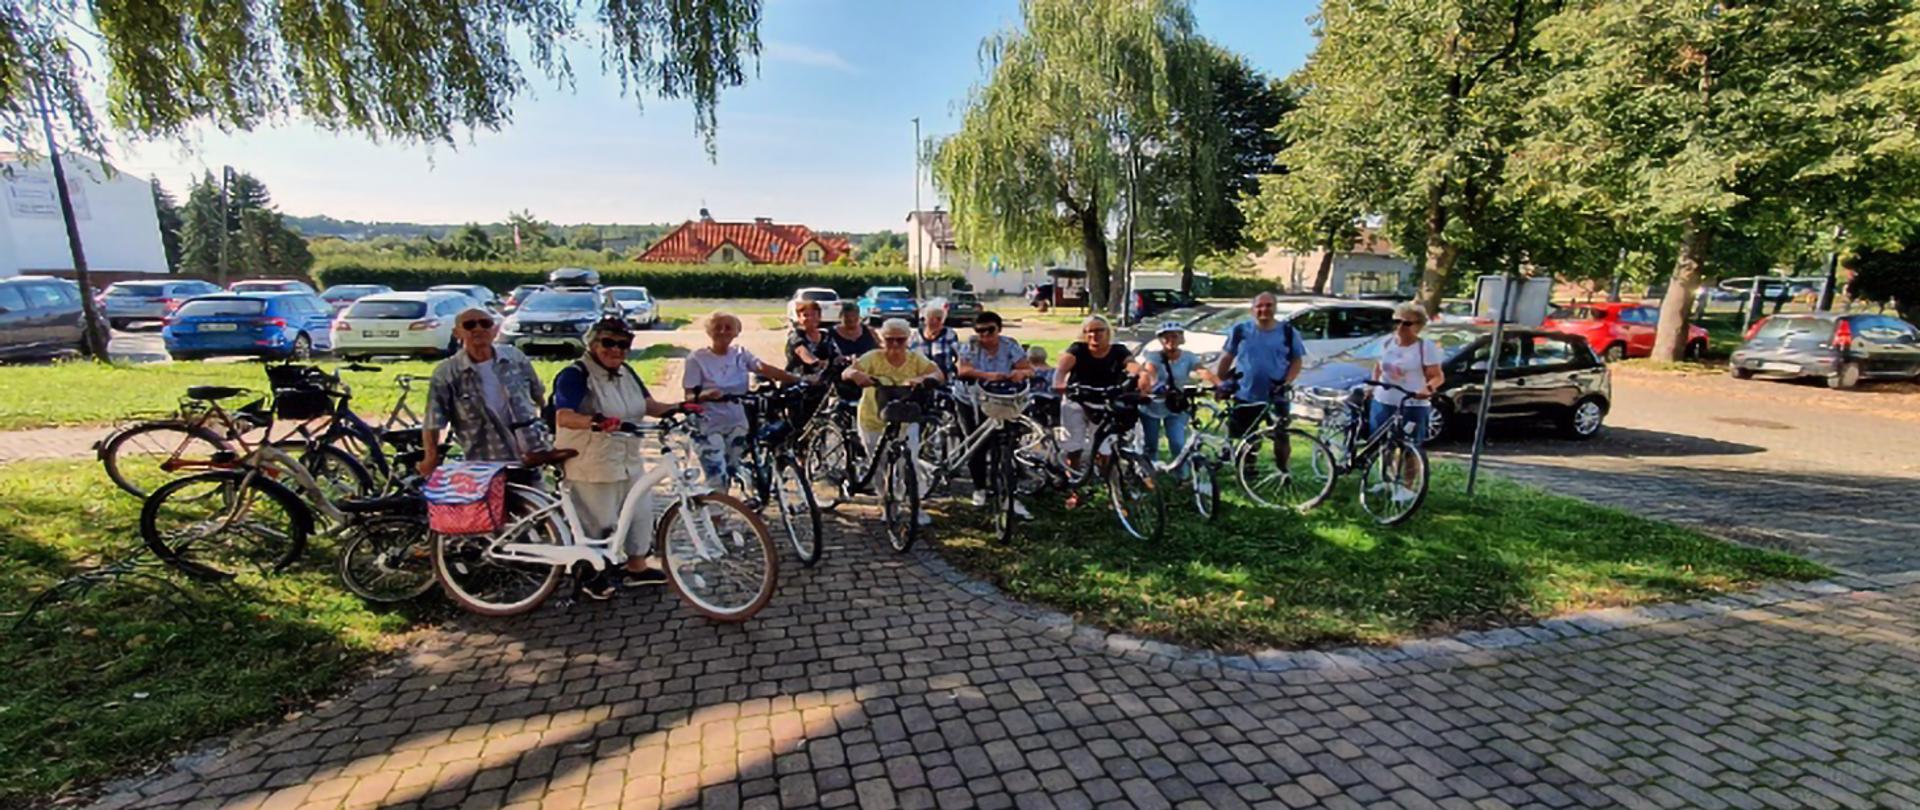 Grupa seniorów z rowerami na parkingu samochodowym